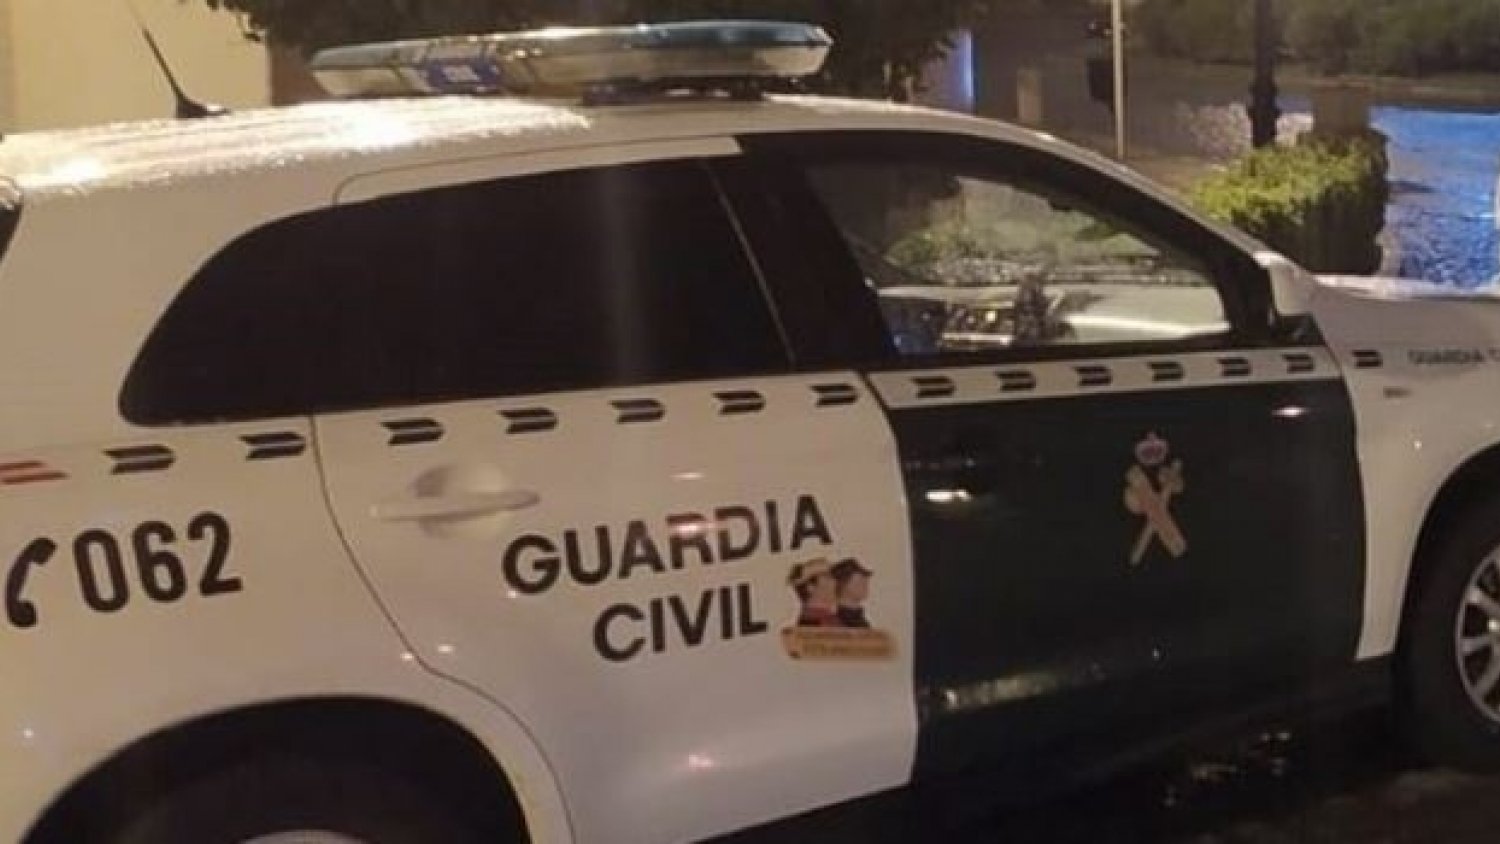 La Guardia Civil reduce a tiros a un hombre en orden de búsqueda y captura en Rincón de la Victoria